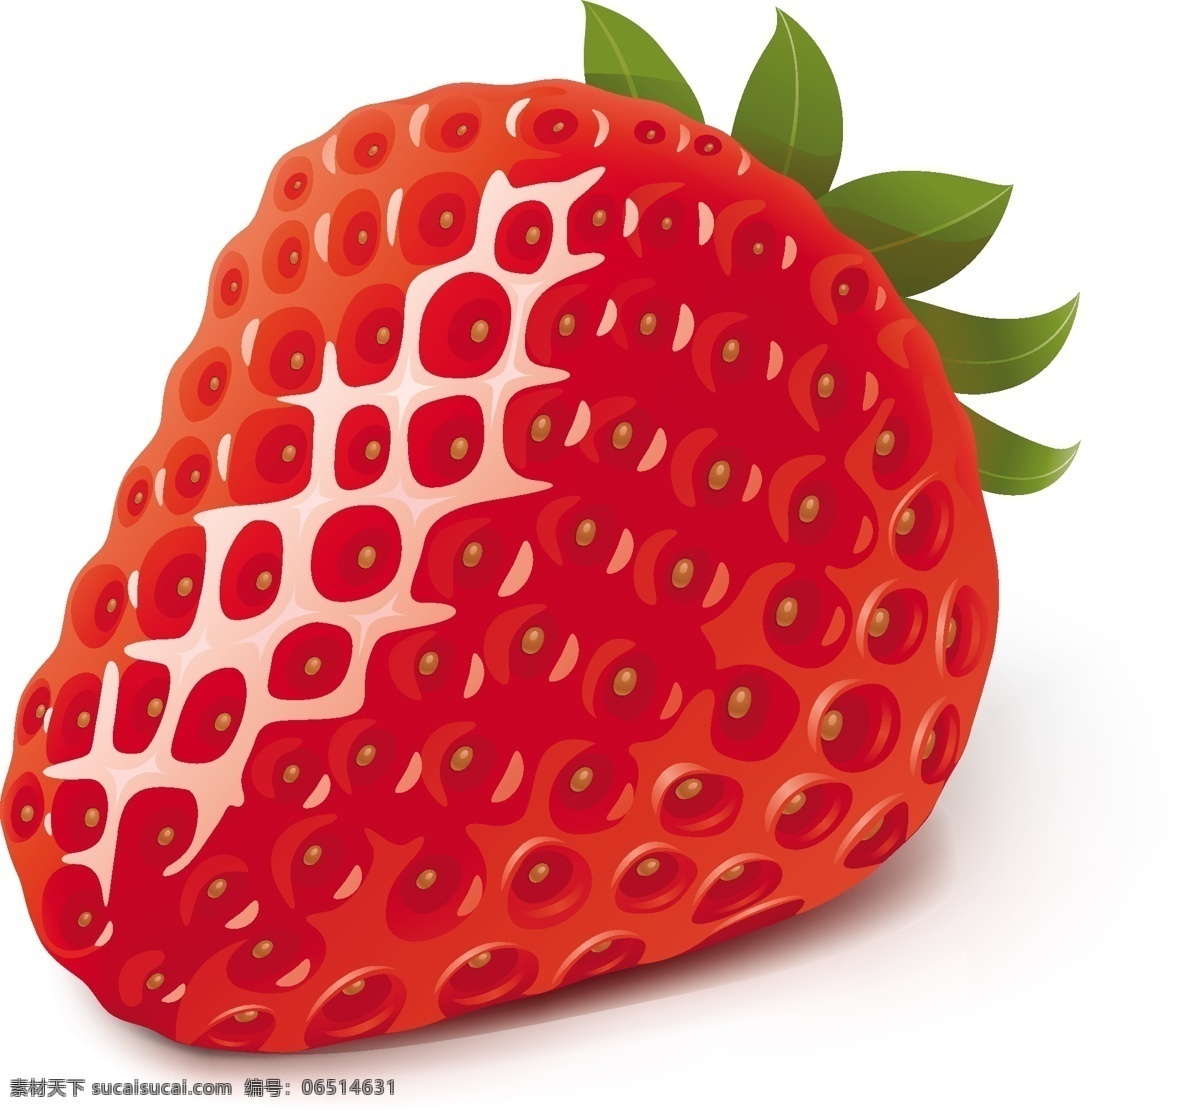 高清 草莓 矢量图 格式 水果 矢量